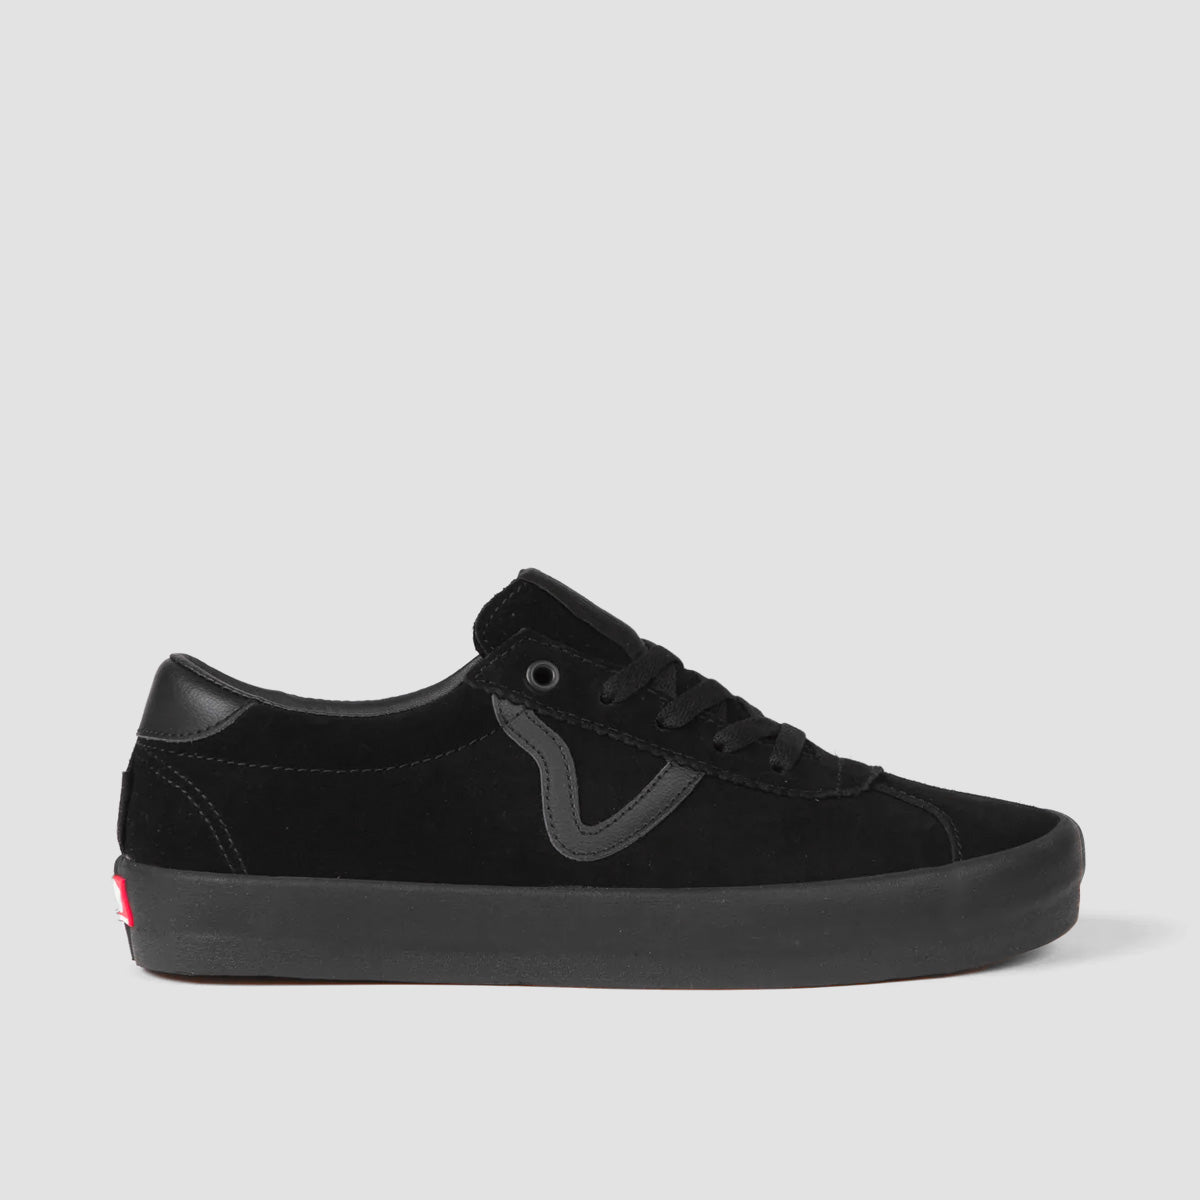 Vans Skate Sport Shoes - Black/Black